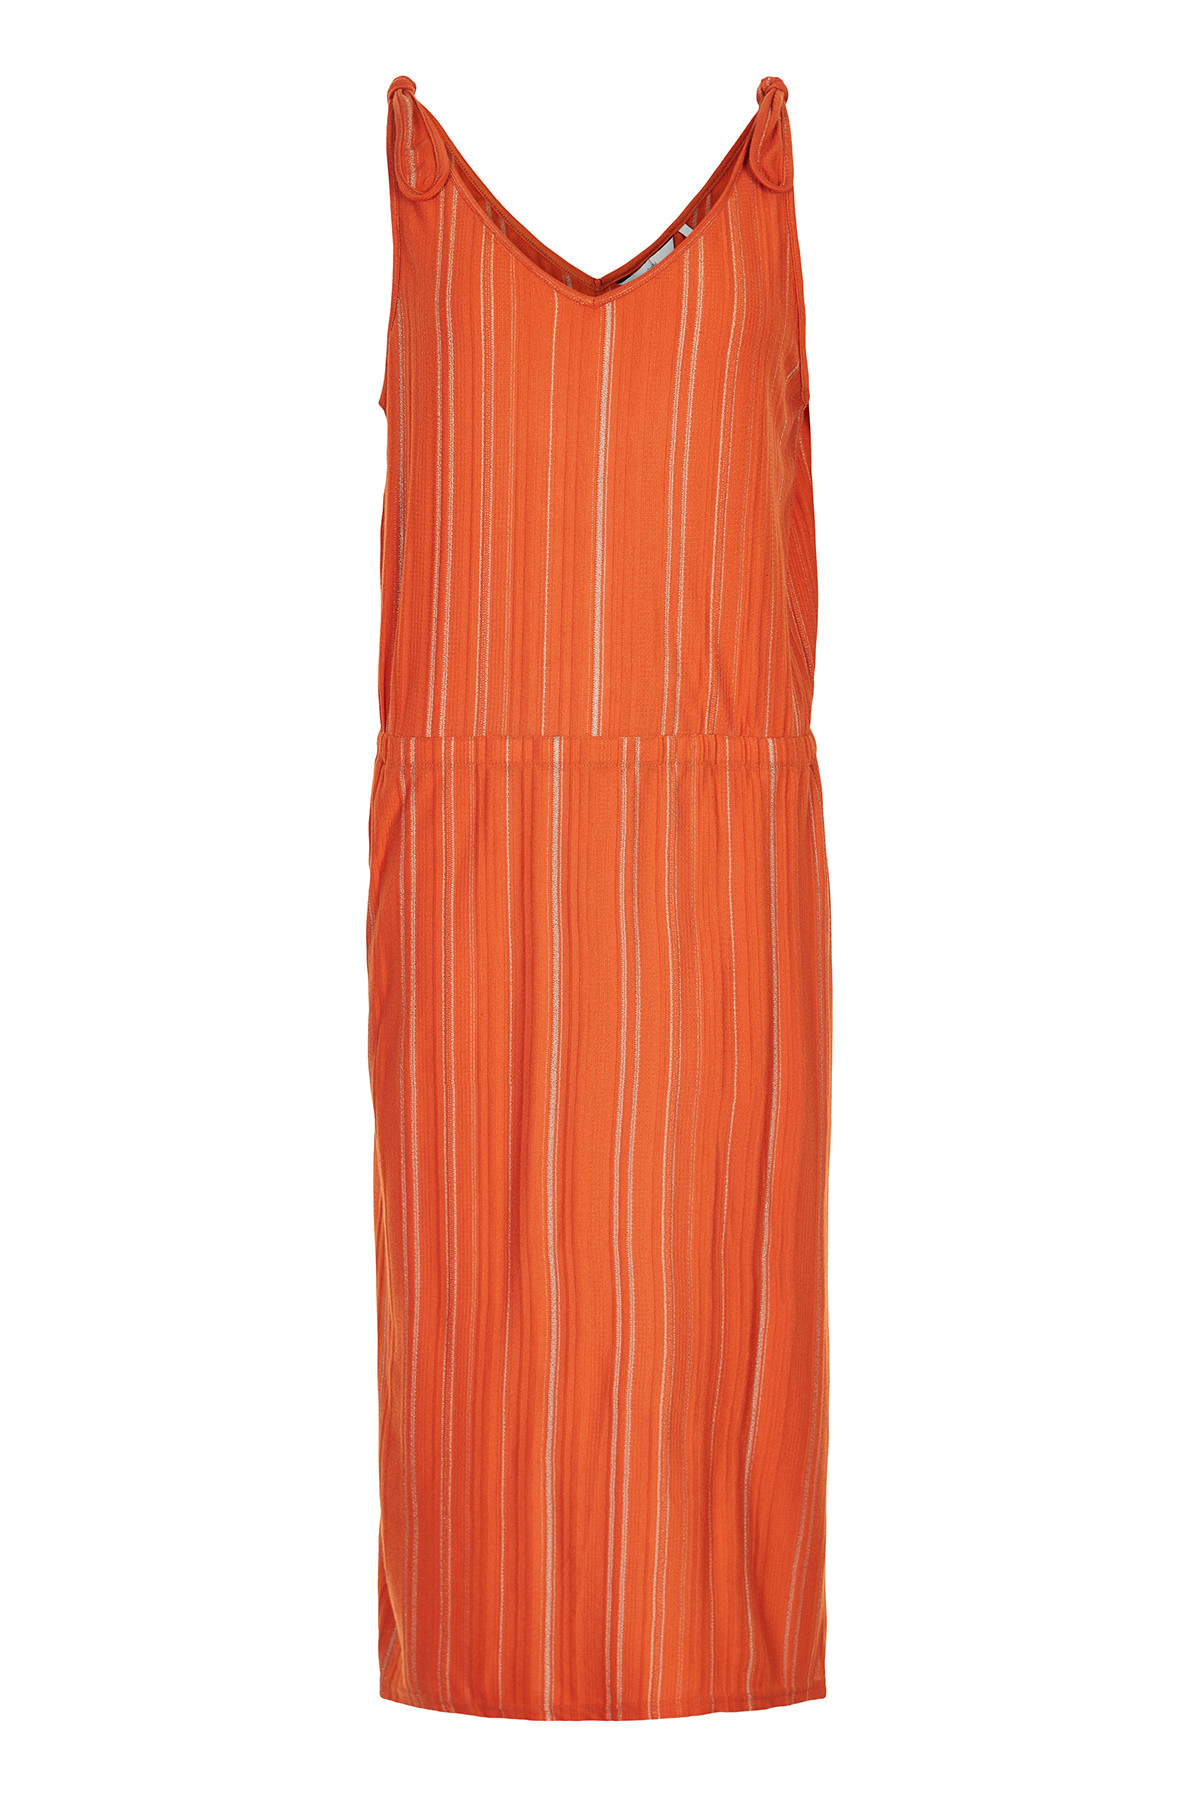 Nümph Nubridger Jersey Kjole, Farve: Orange, Størrelse: M, Dame